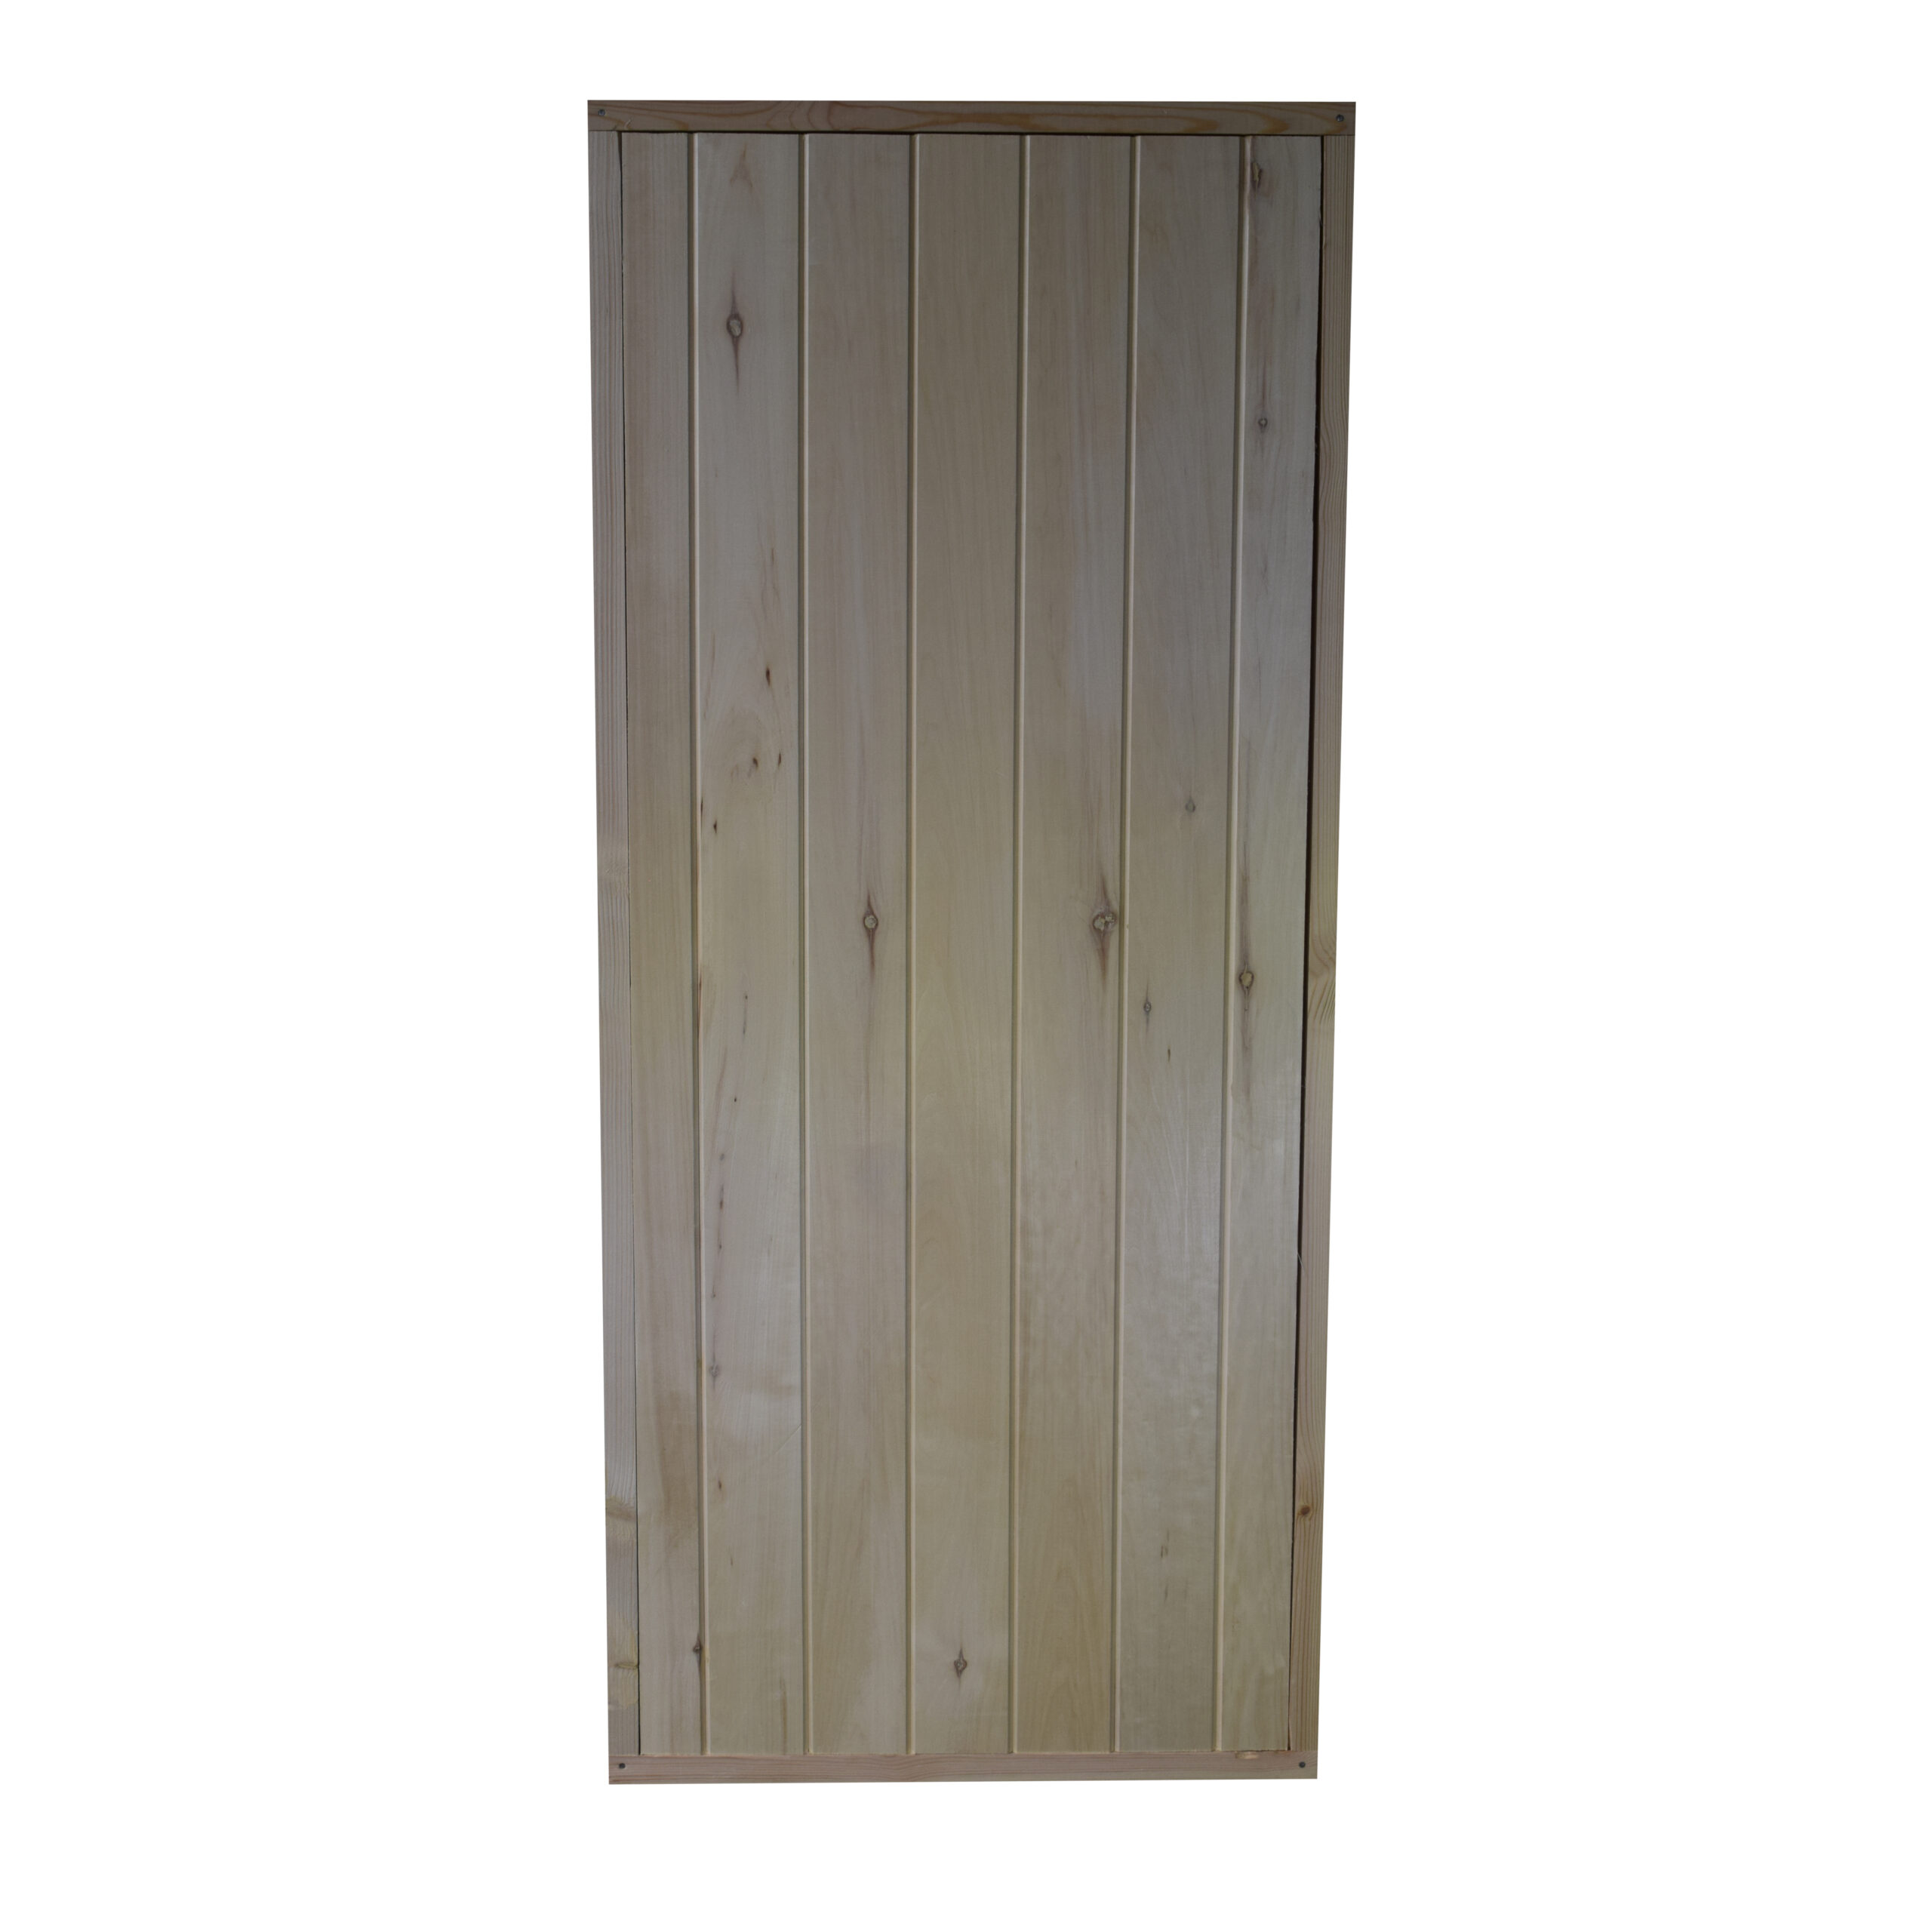 Дверь банная массив «Вертикаль» (Осина, 1770x770x80 мм, Cорт B)